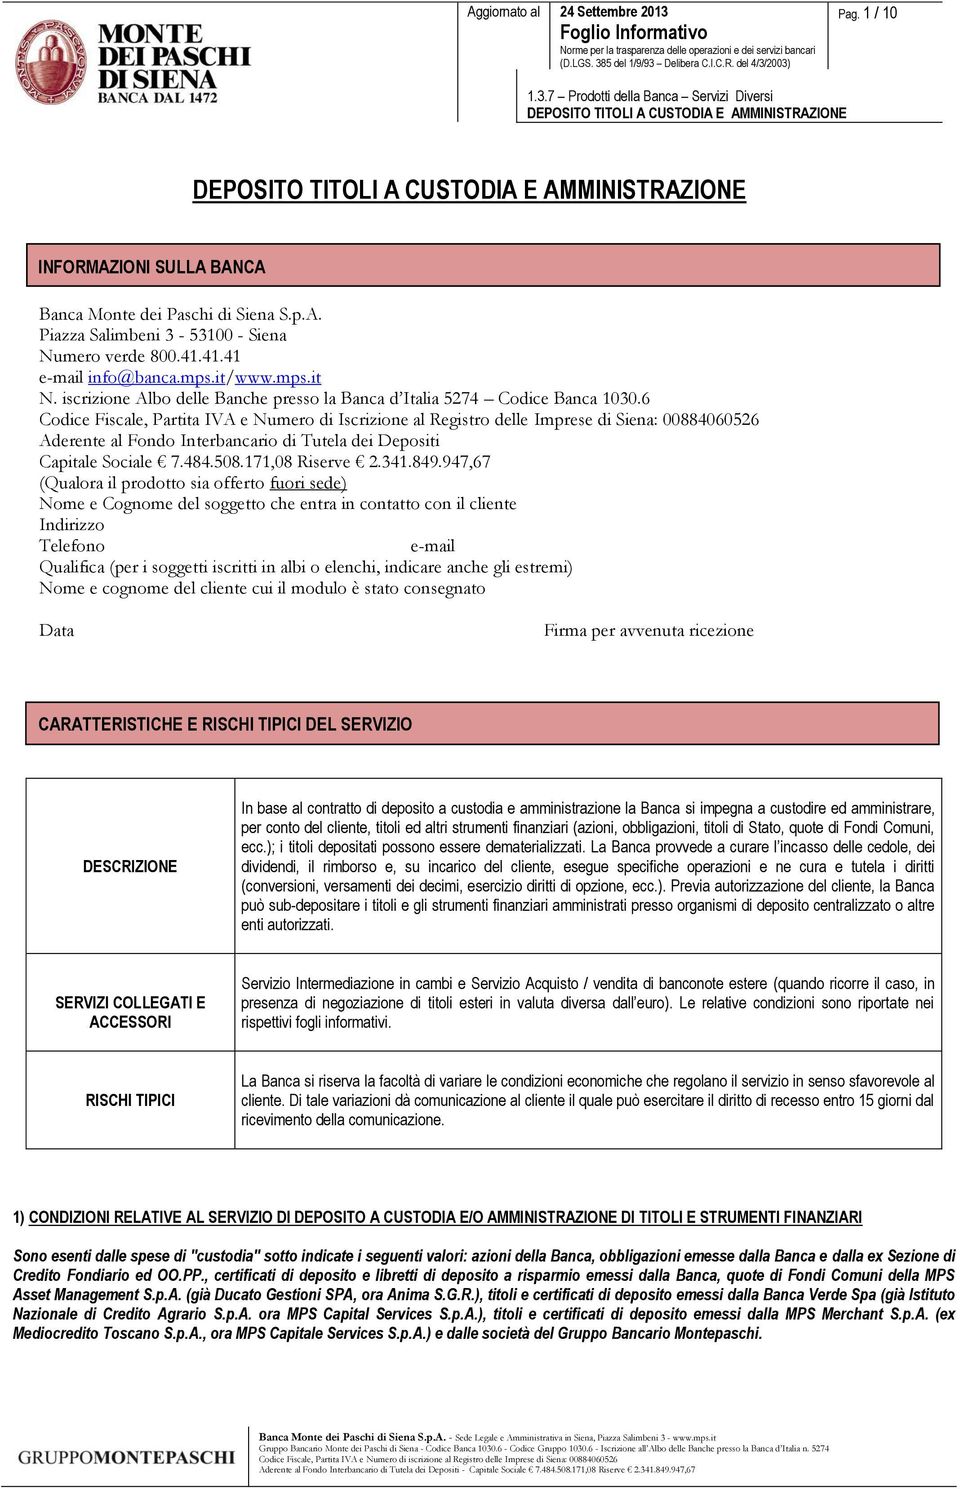 6 Codice Fiscale, Partita IVA e Numero di Iscrizione al Registro delle Imprese di Siena: 00884060526 Aderente al Fondo Interbancario di Tutela dei Depositi Capitale Sociale 7.484.508.171,08 Riserve 2.